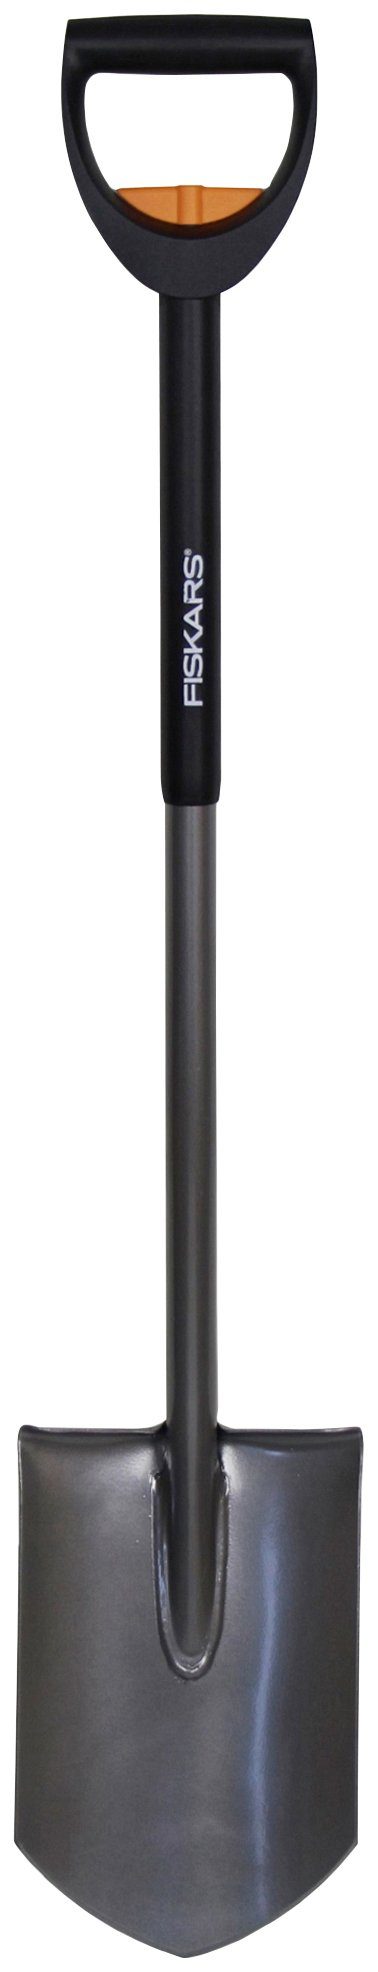 Fiskars Spaten, teleskopierbar, 105-125 cm Gesamtlänge